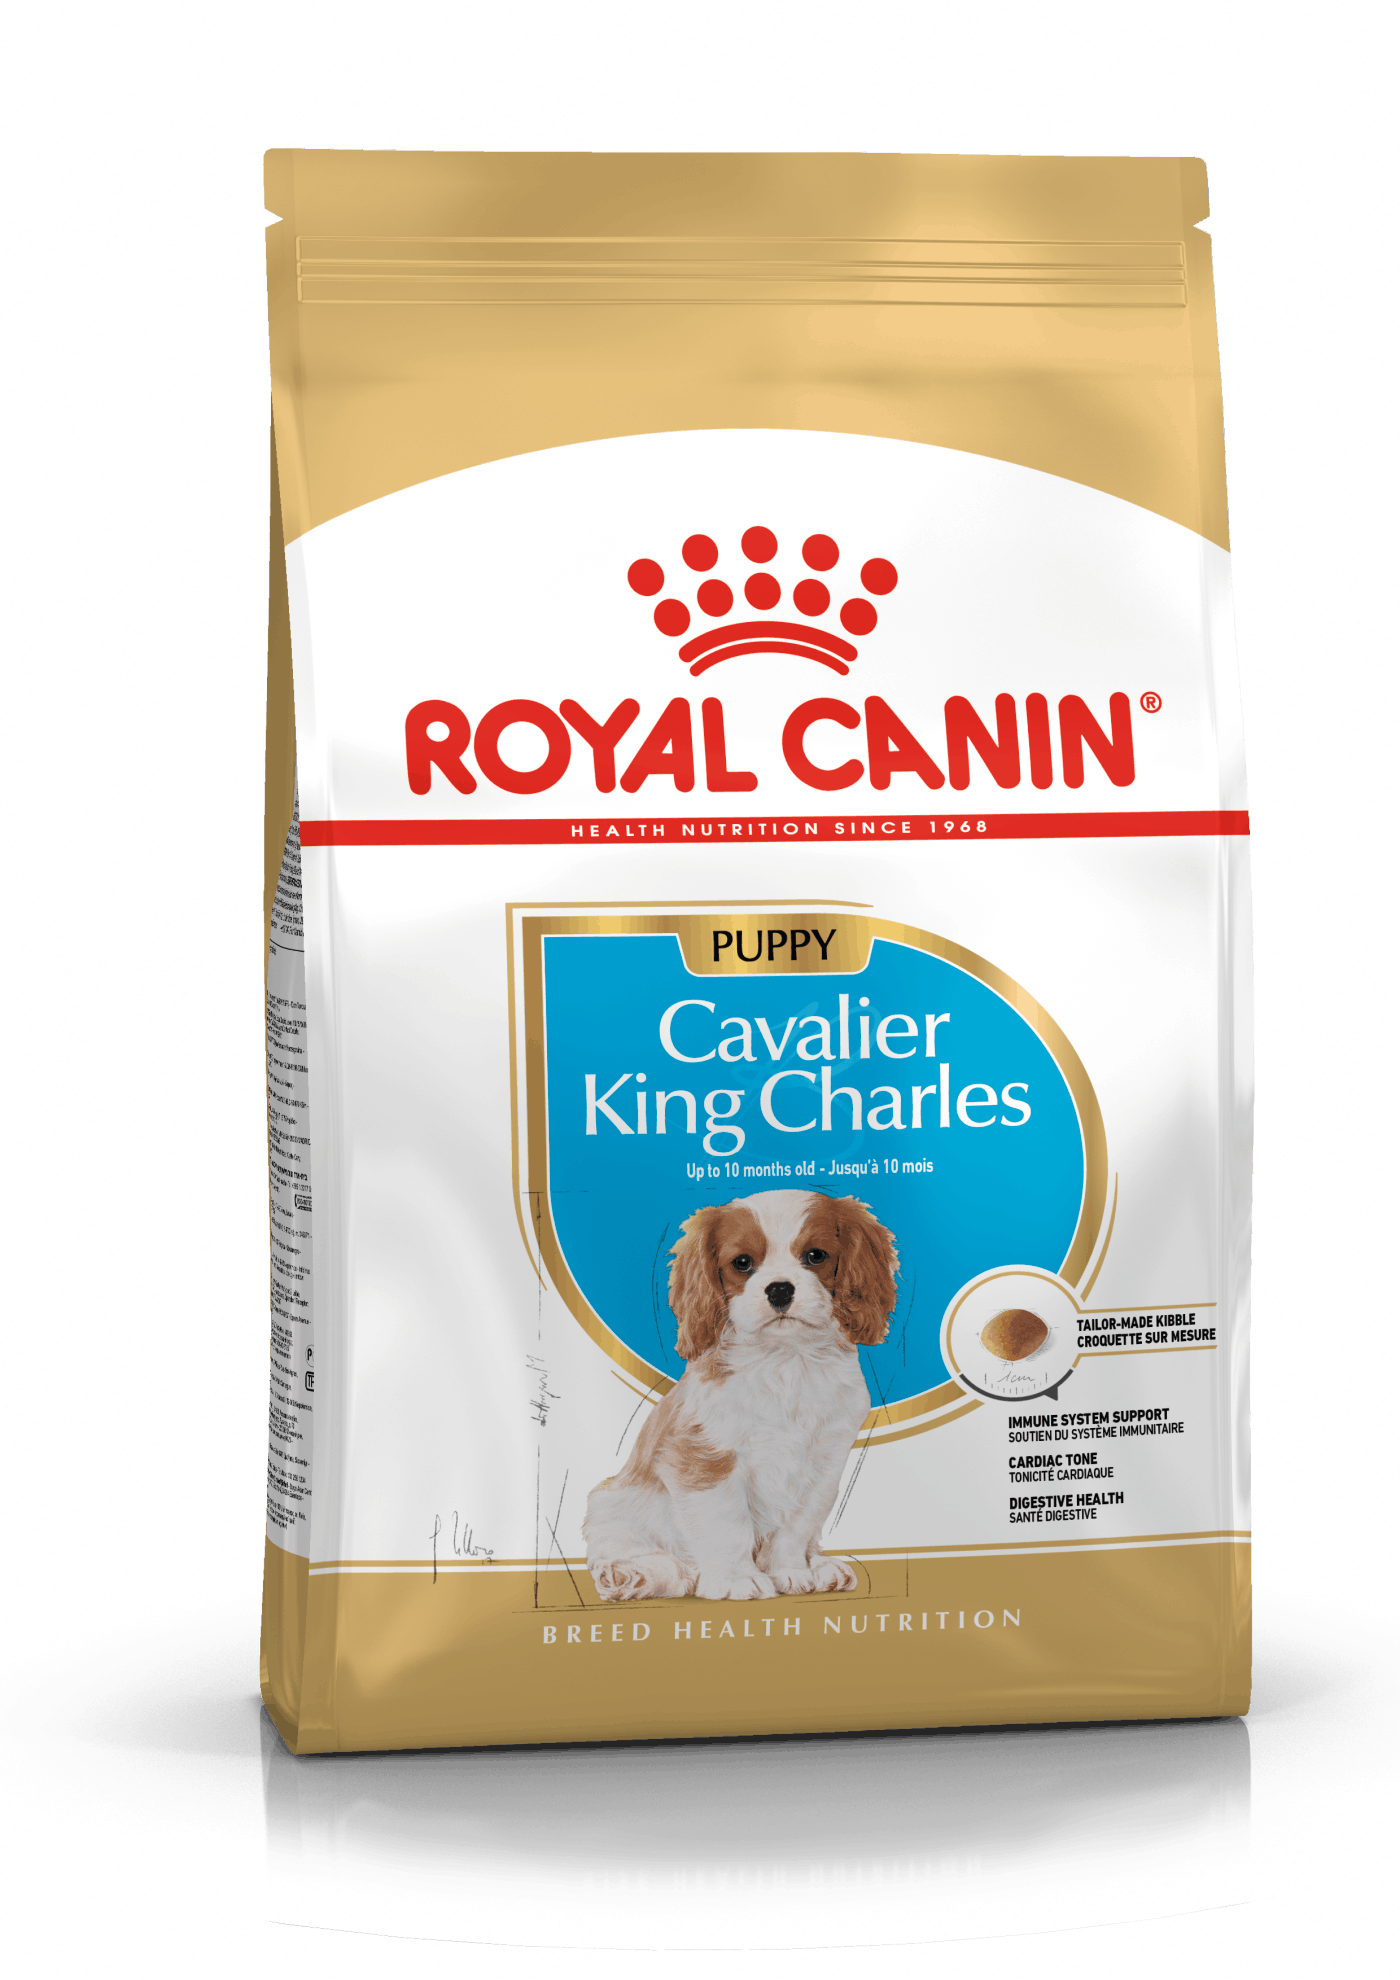 Royal Canin Cavalier King Charles Puppy - op til 12 måneder (1,5kg).